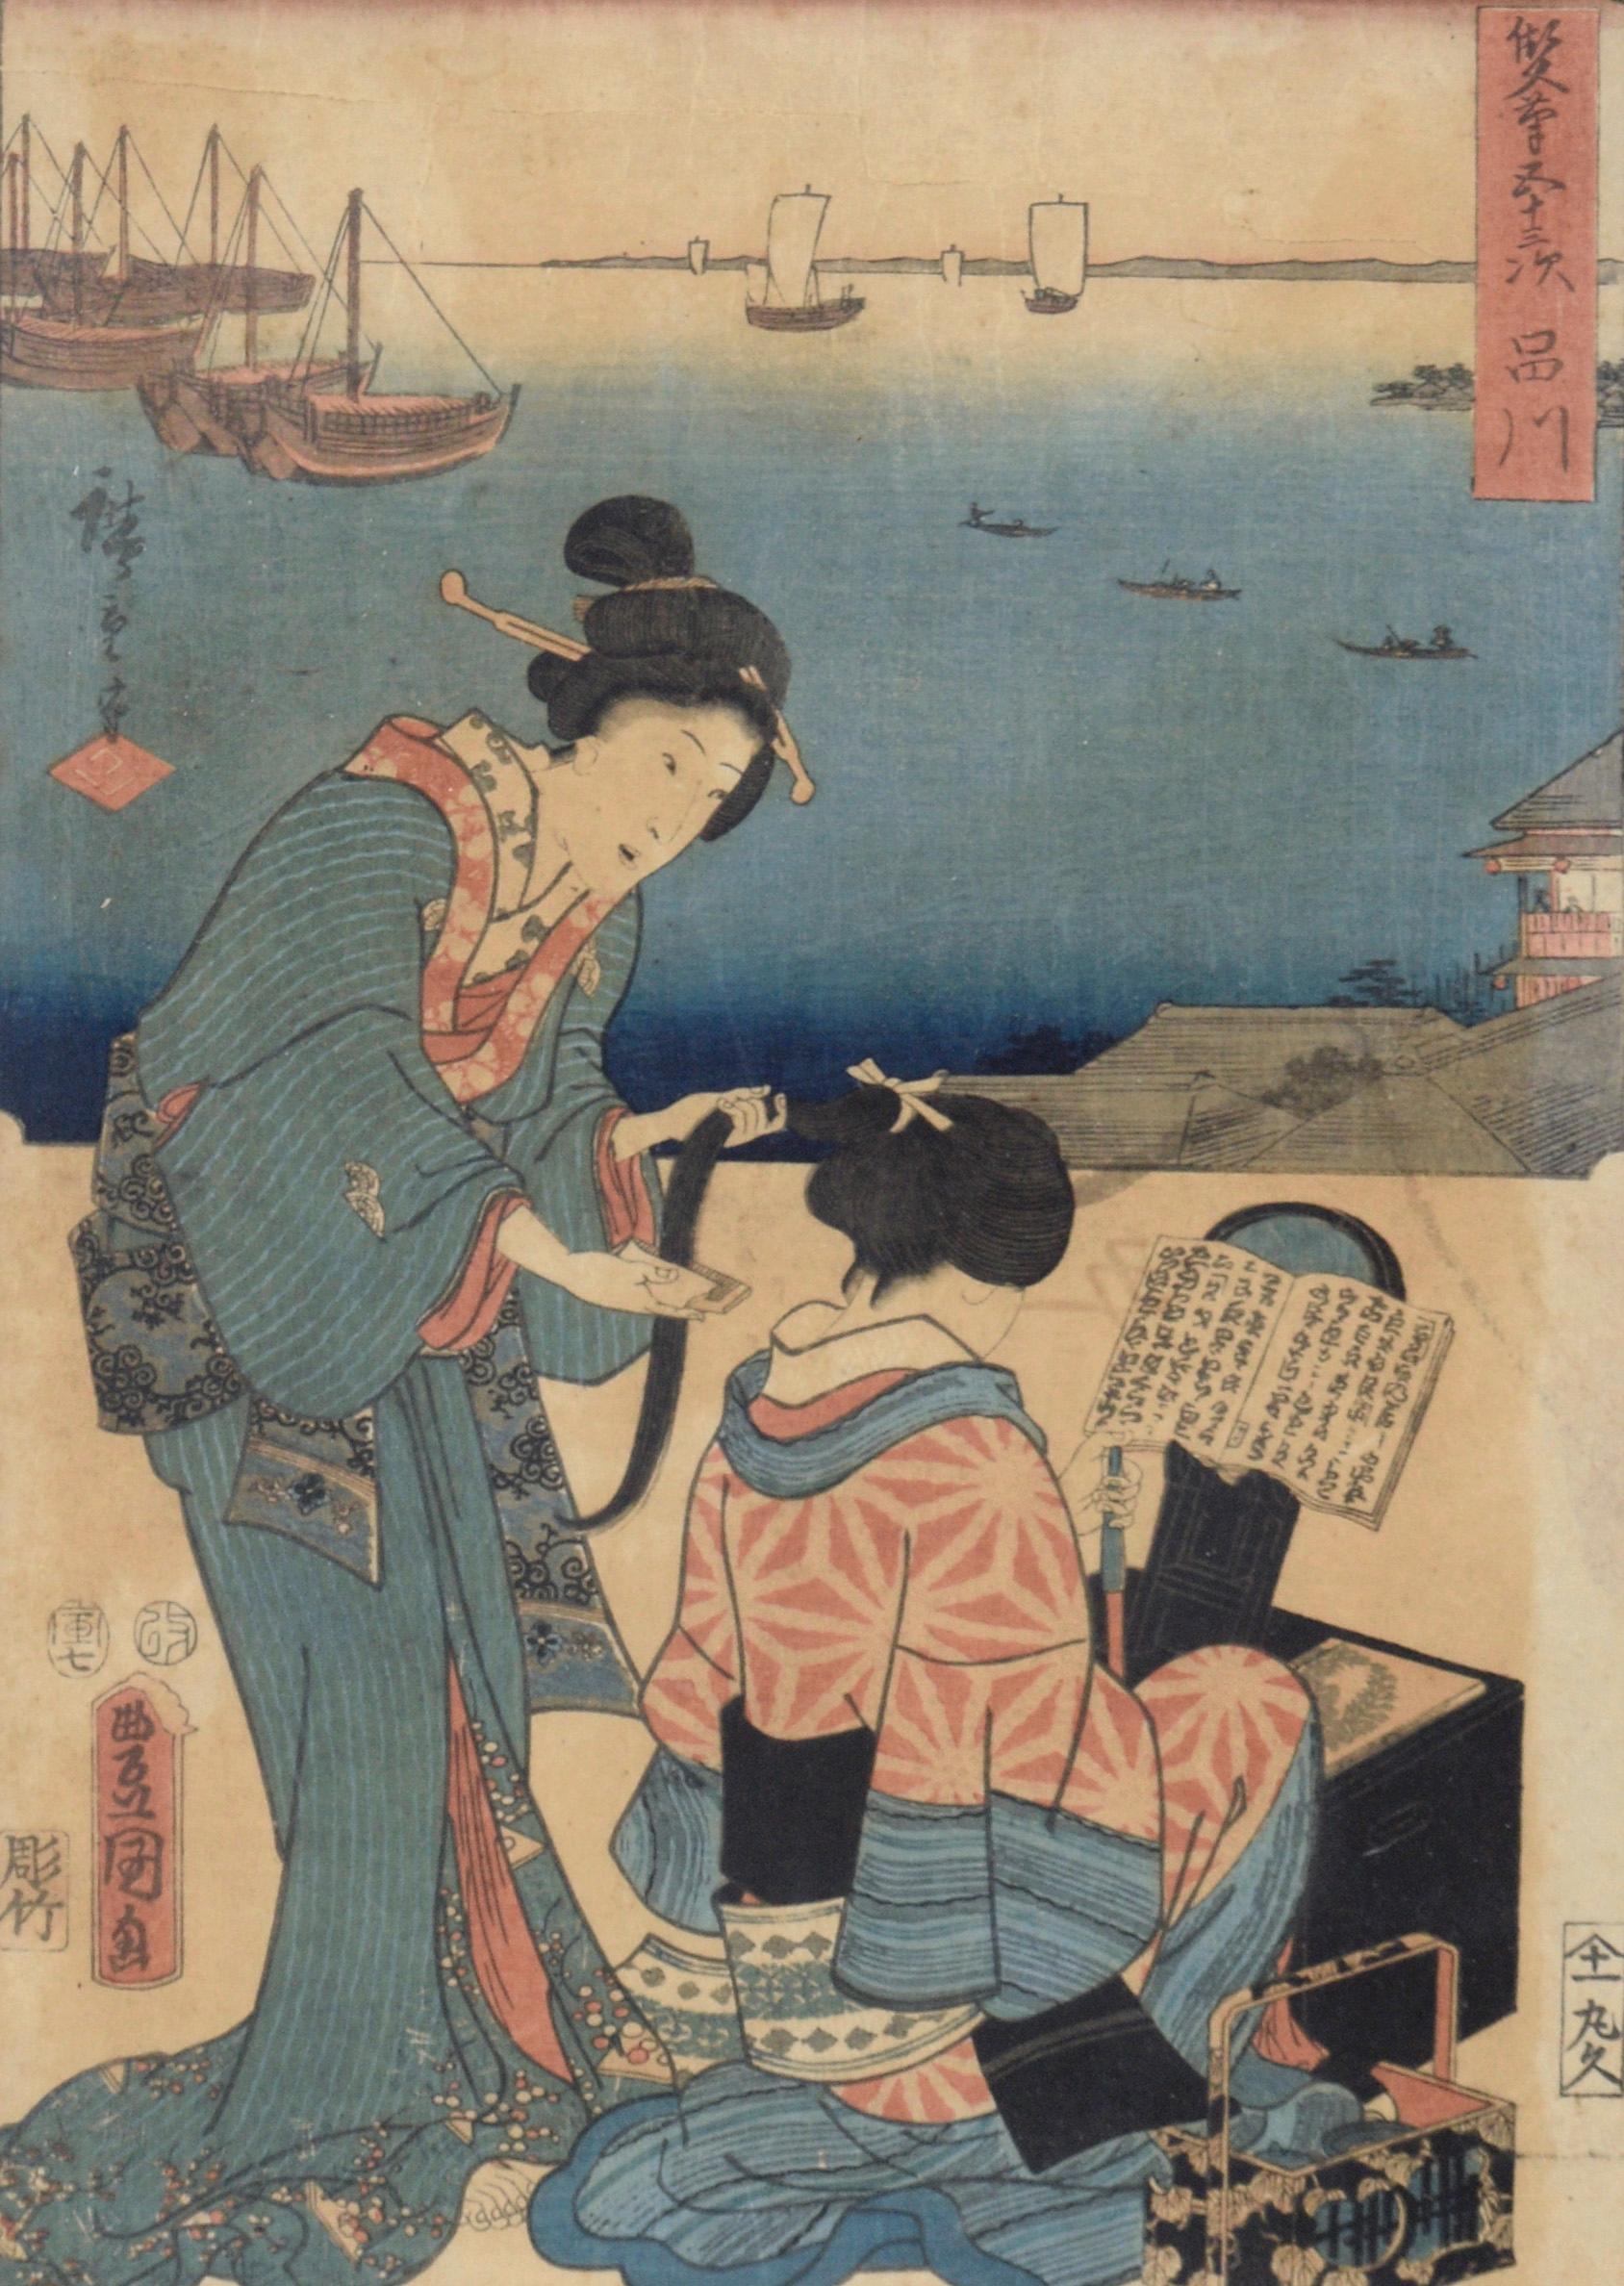 53 Stationen des Tokaido-Schminkzimmers – Holzschnitt von Utagawa Hiroshige und Kunisada – Print von Utagawa Kunisada (Toyokuni III)